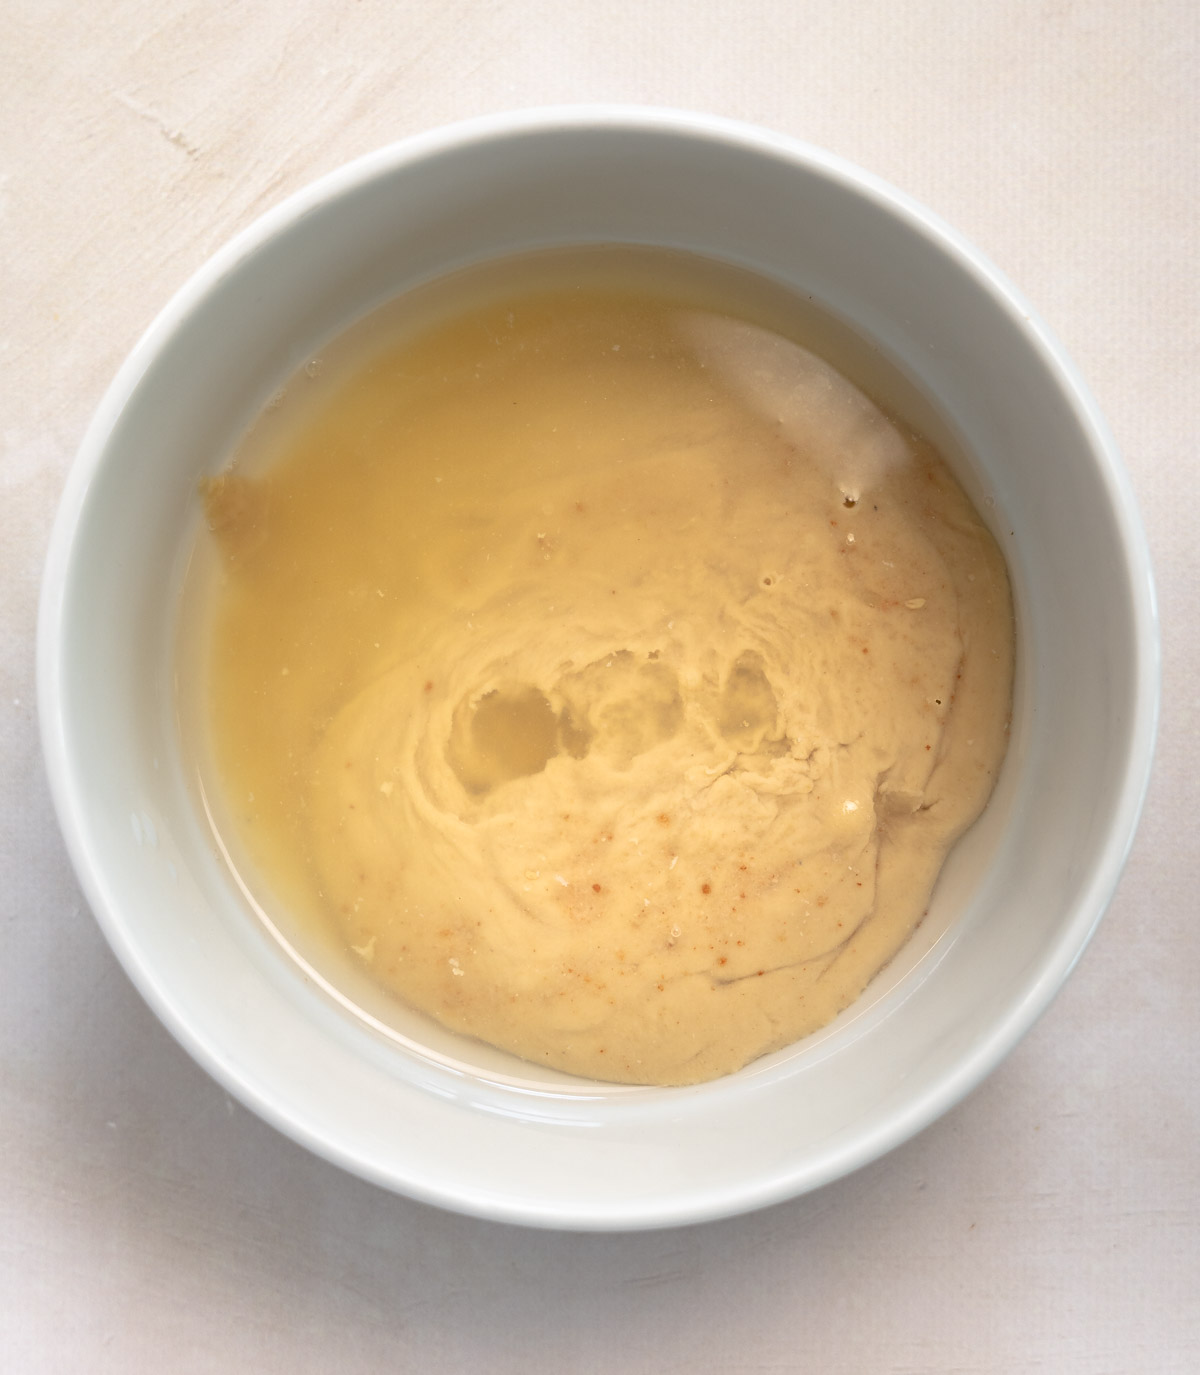 tahini, lemon, water and salt in a white bowl